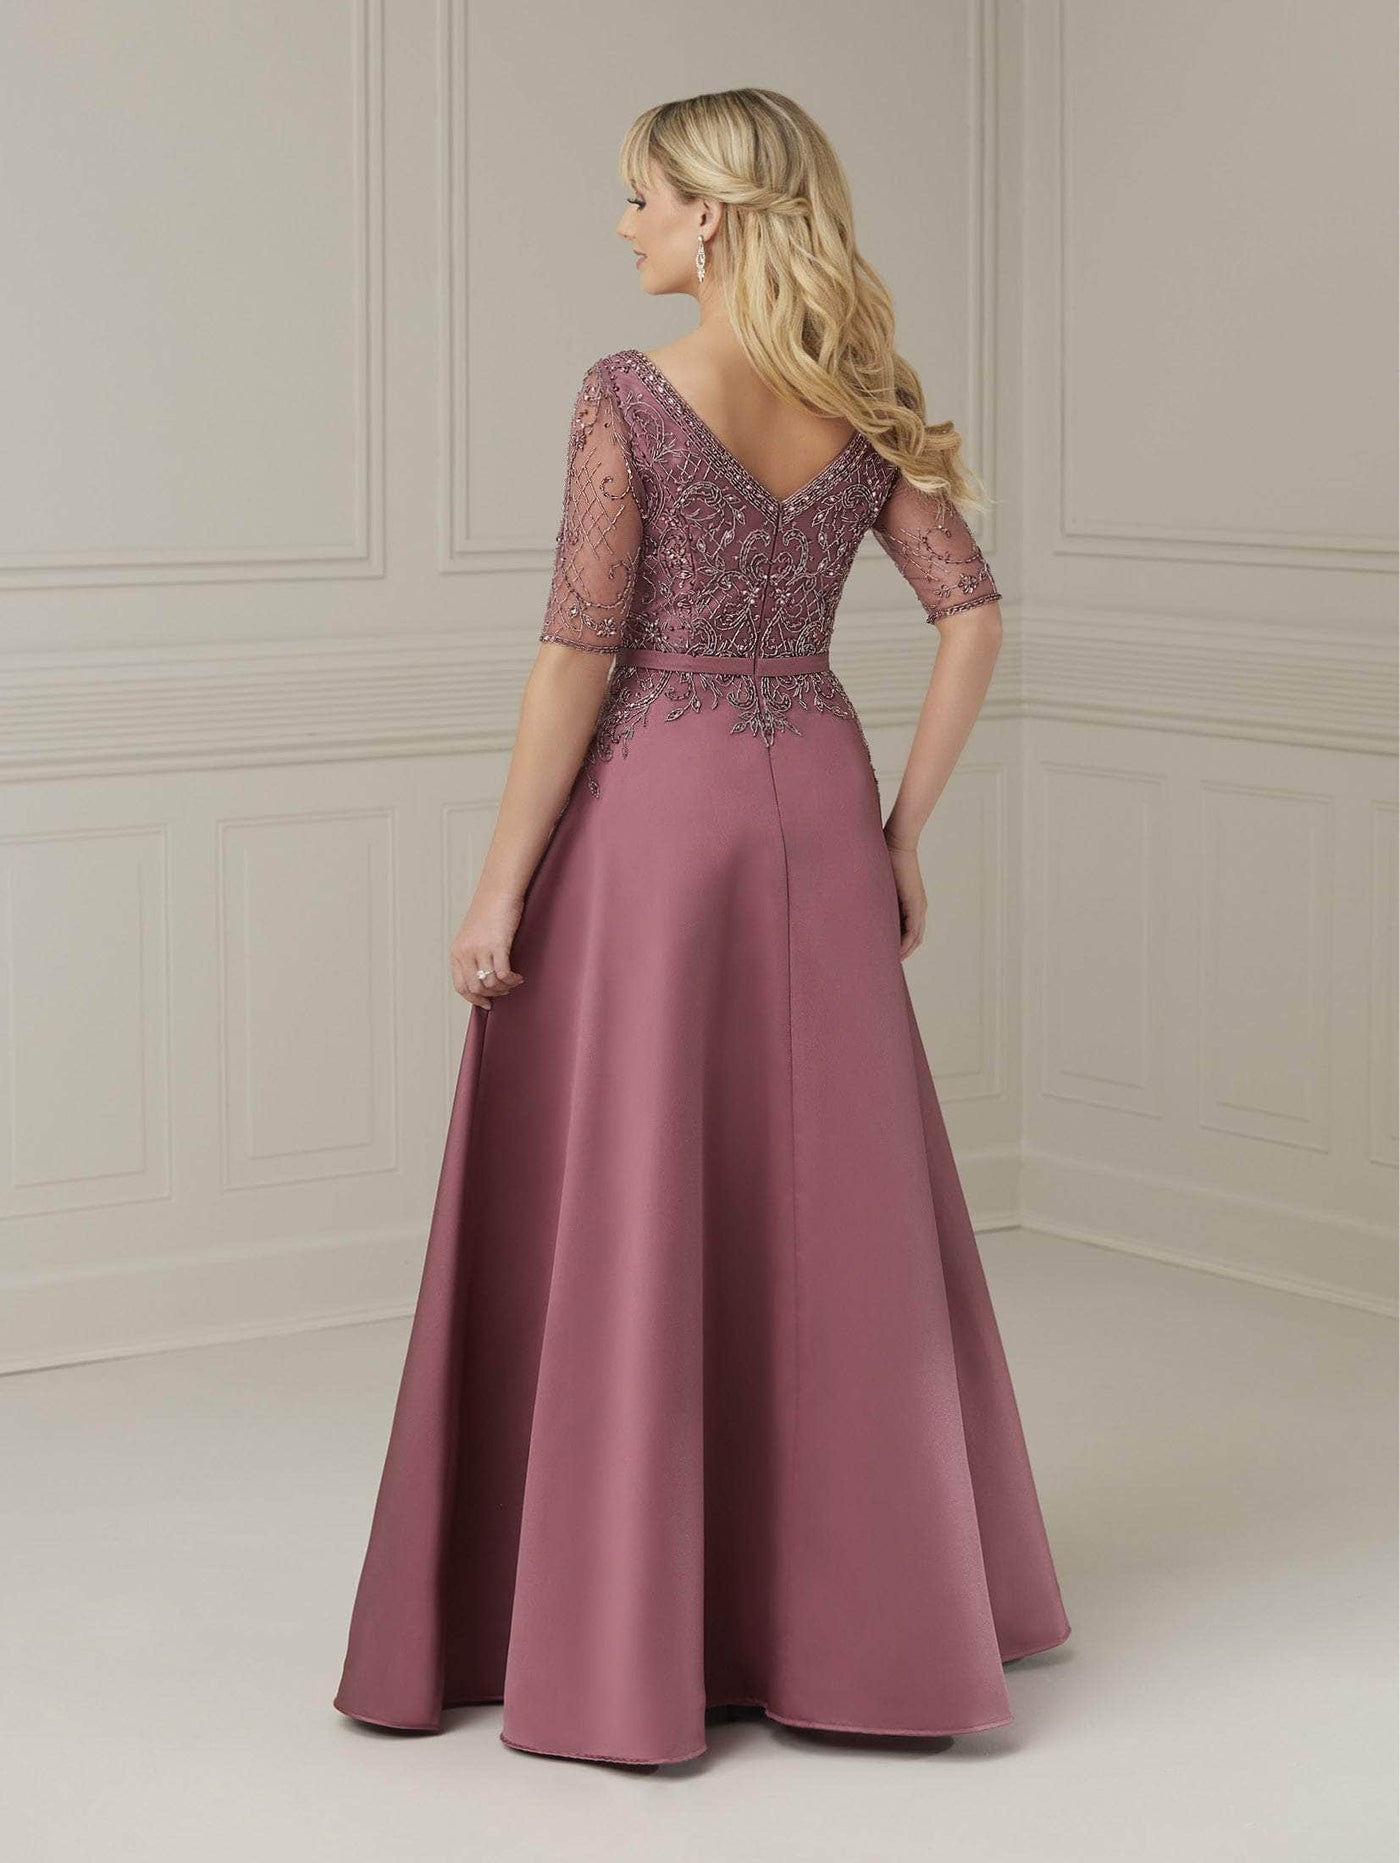 Christina Wu Elegance 17103 - Beaded Bodice A-Line Evening Dress Special Occasion Dress